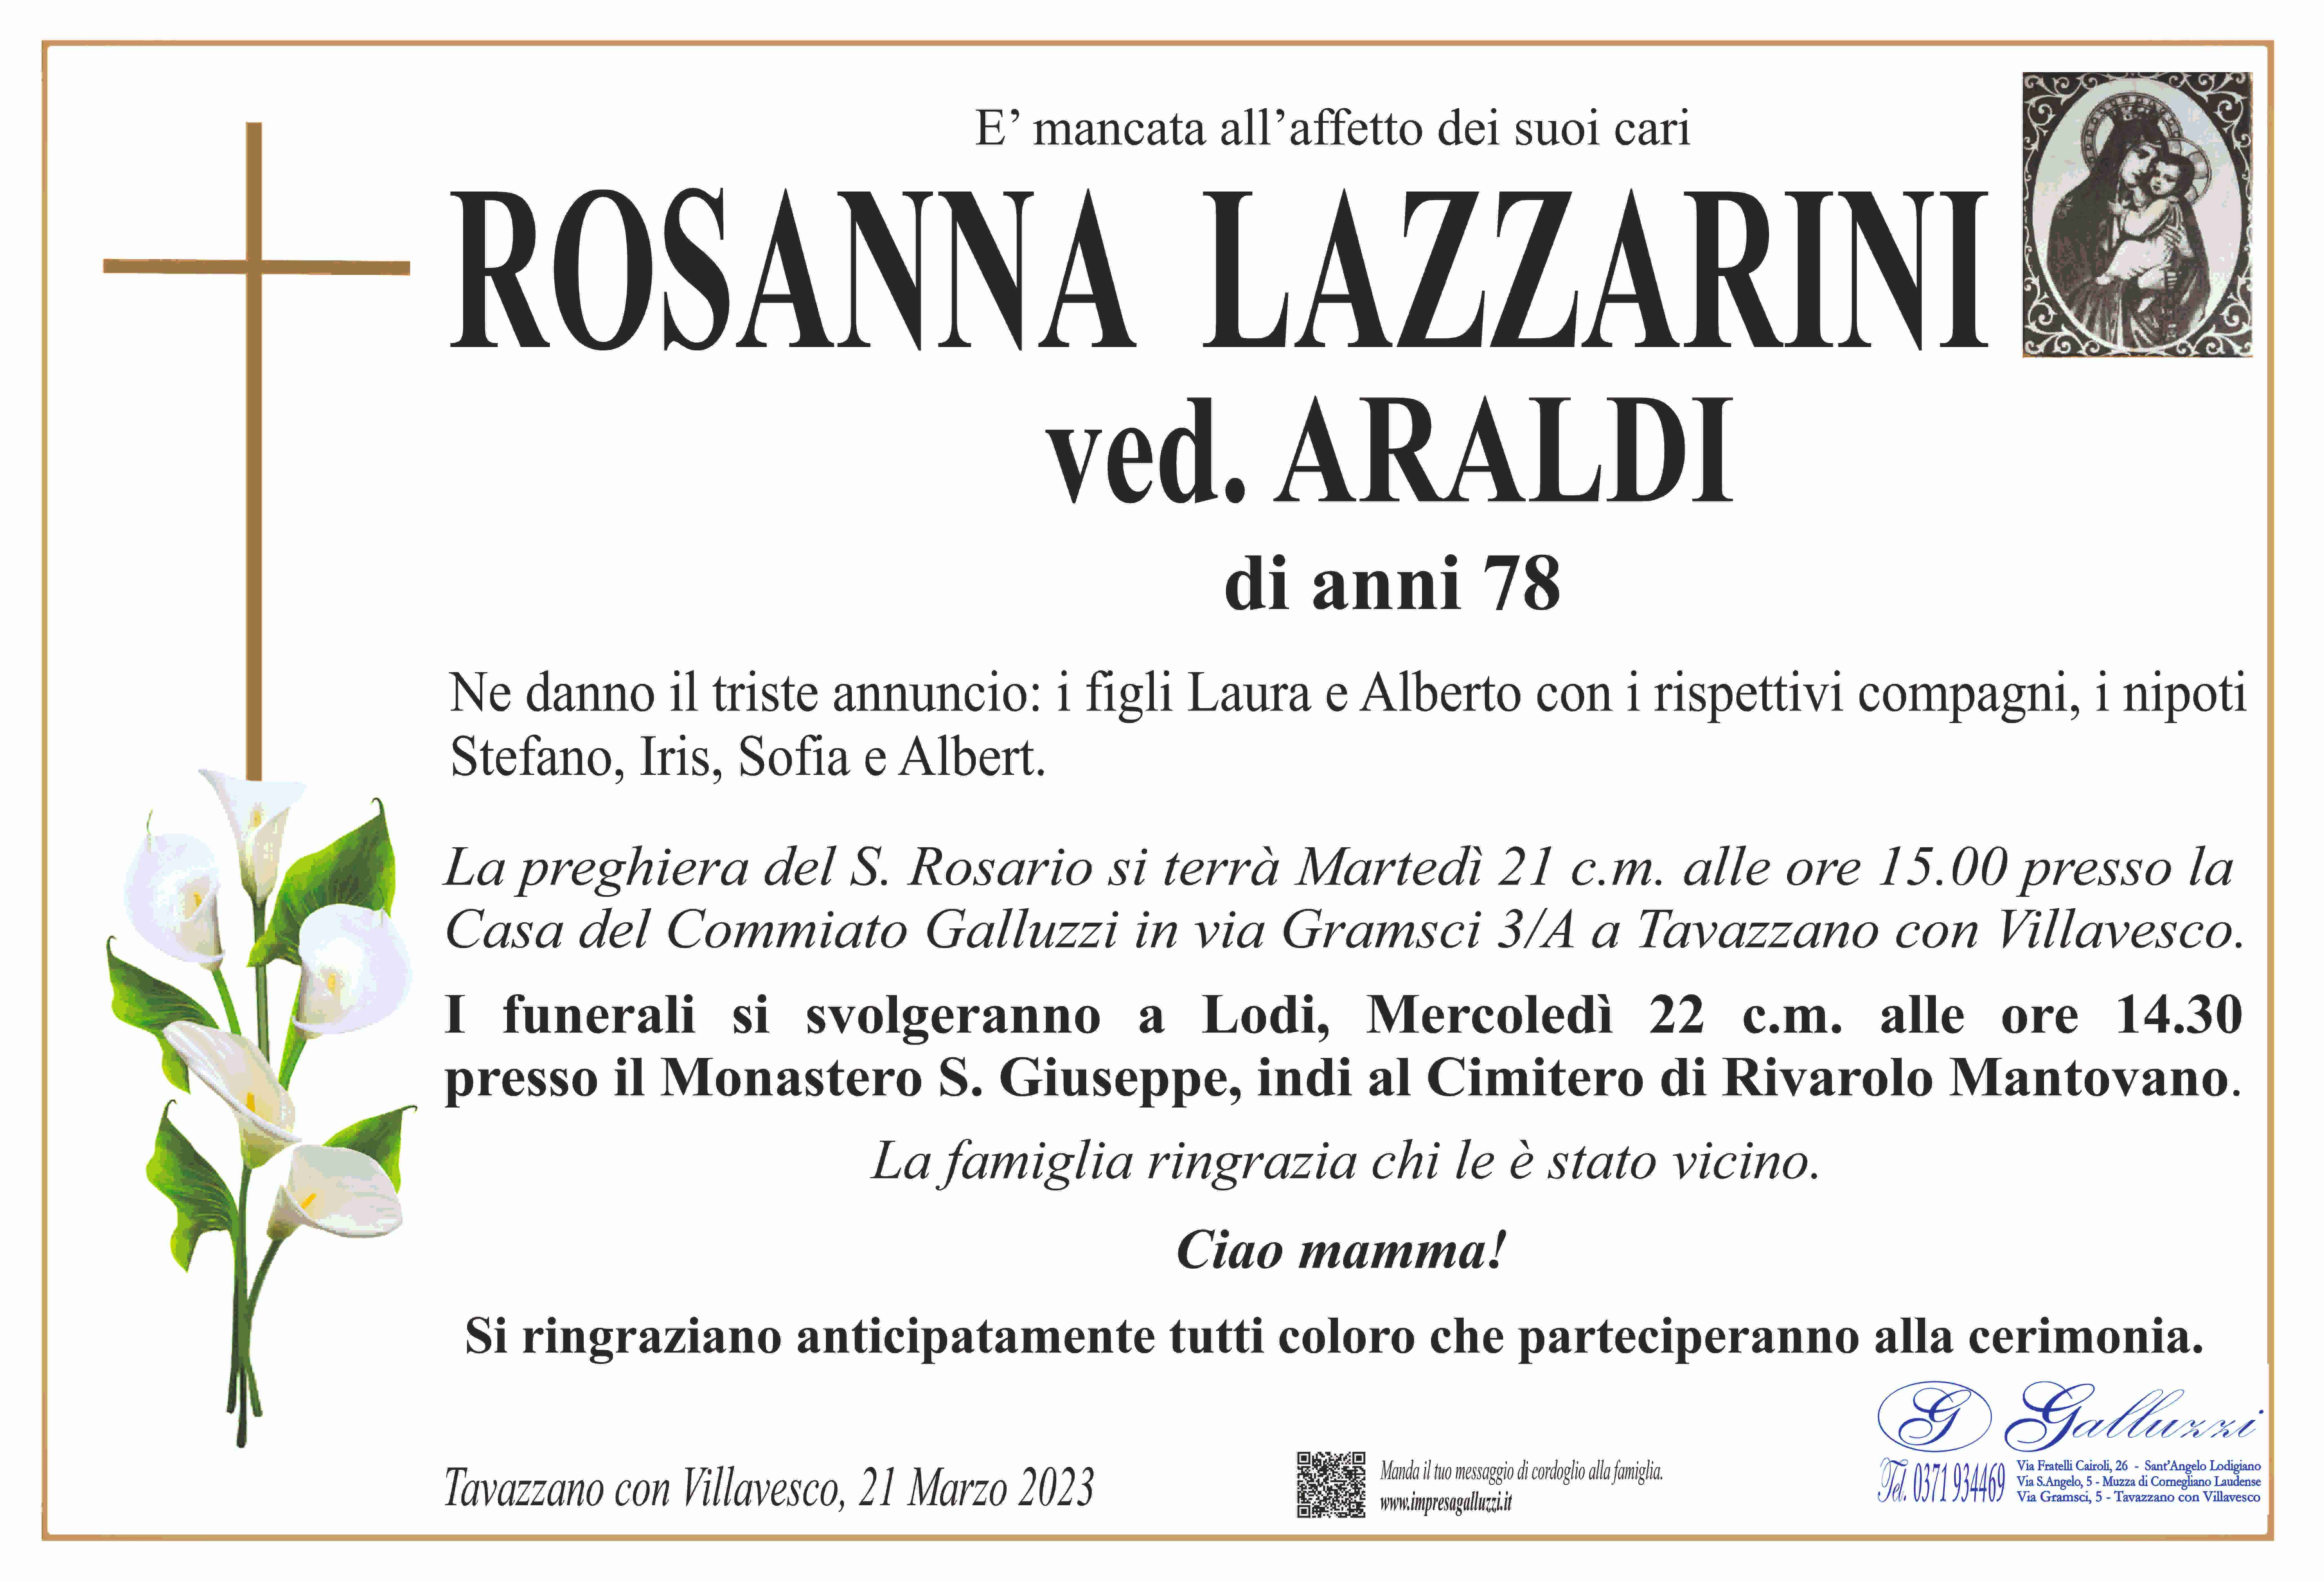 Rosanna Lazzarini